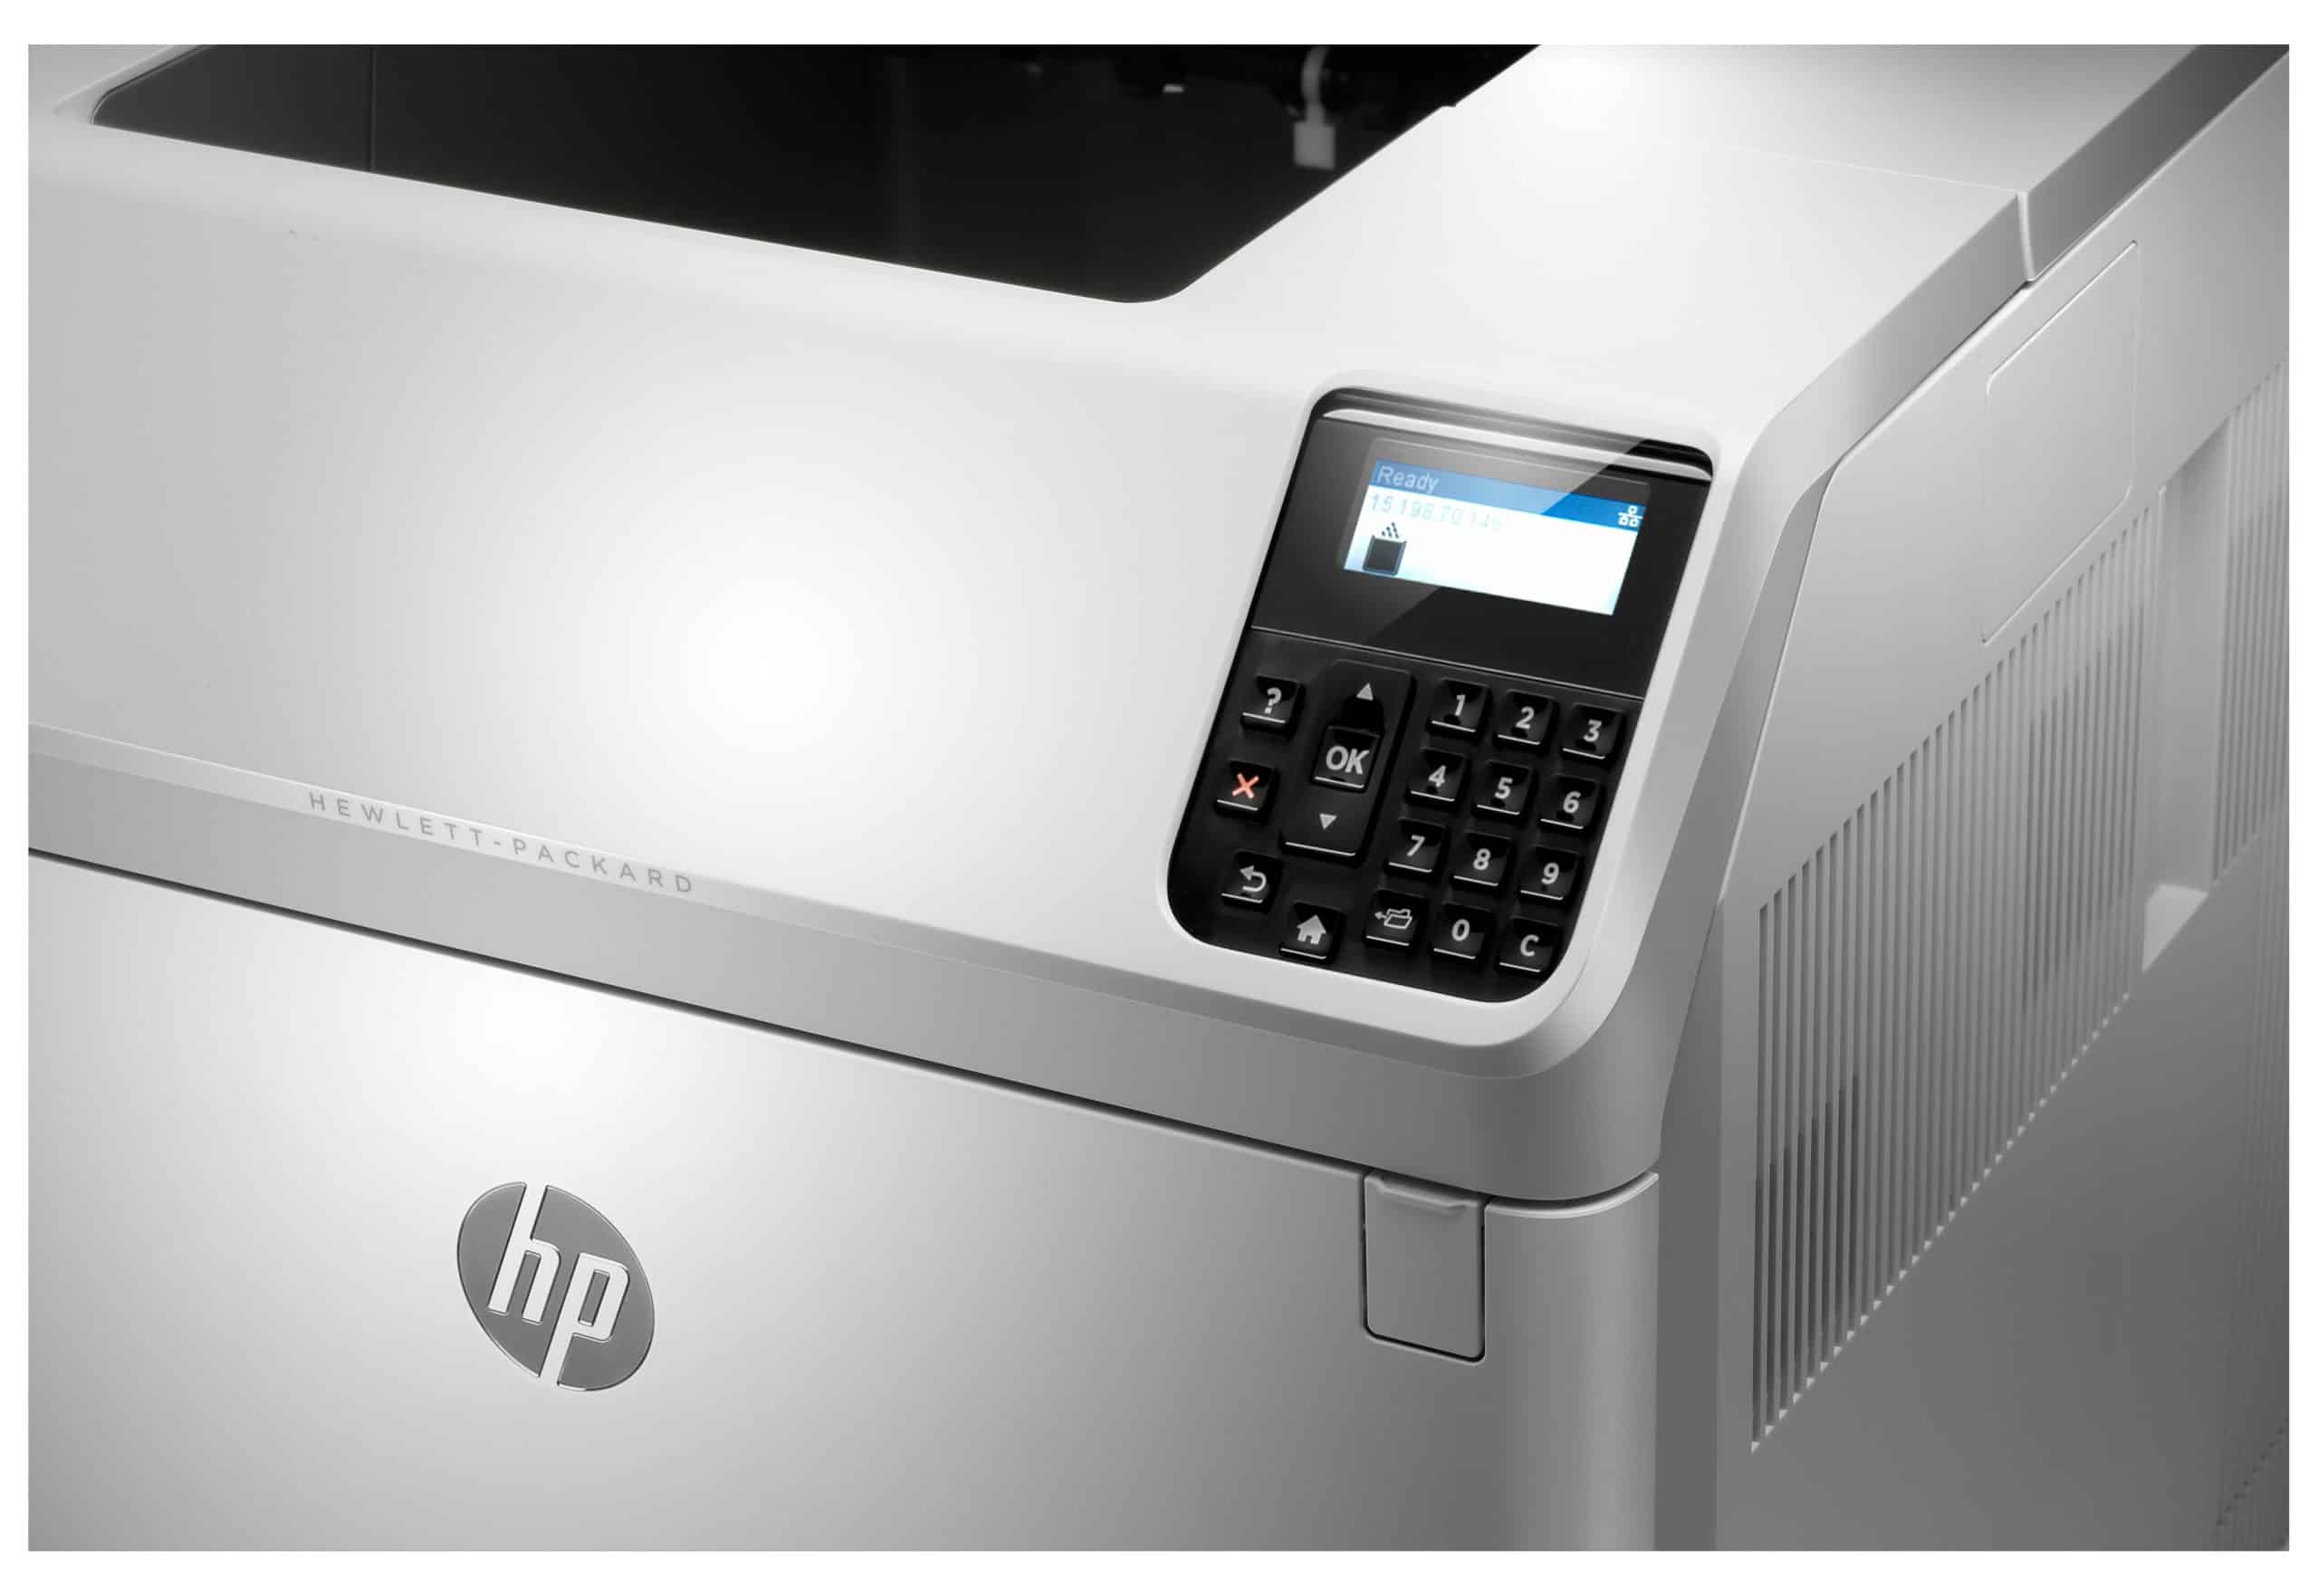 HP LaserJet Enterprise M606dn